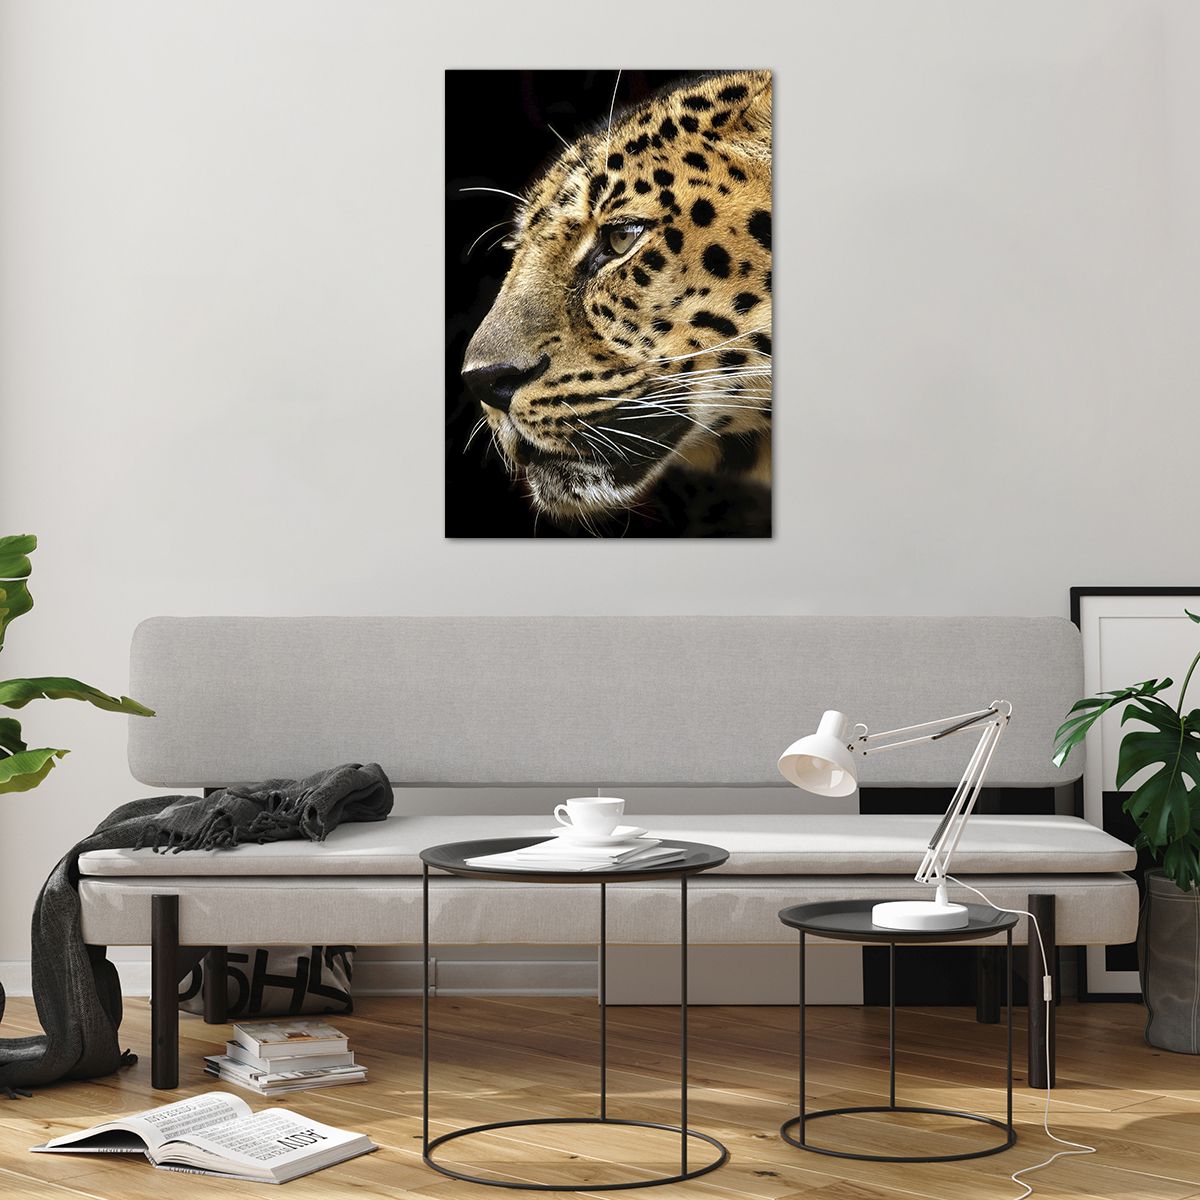 Bilder auf glas Tiere, Bilder auf glas Leopard, Bilder auf glas Afrika, Bilder auf glas Wilde Katze, Bilder auf glas Natur